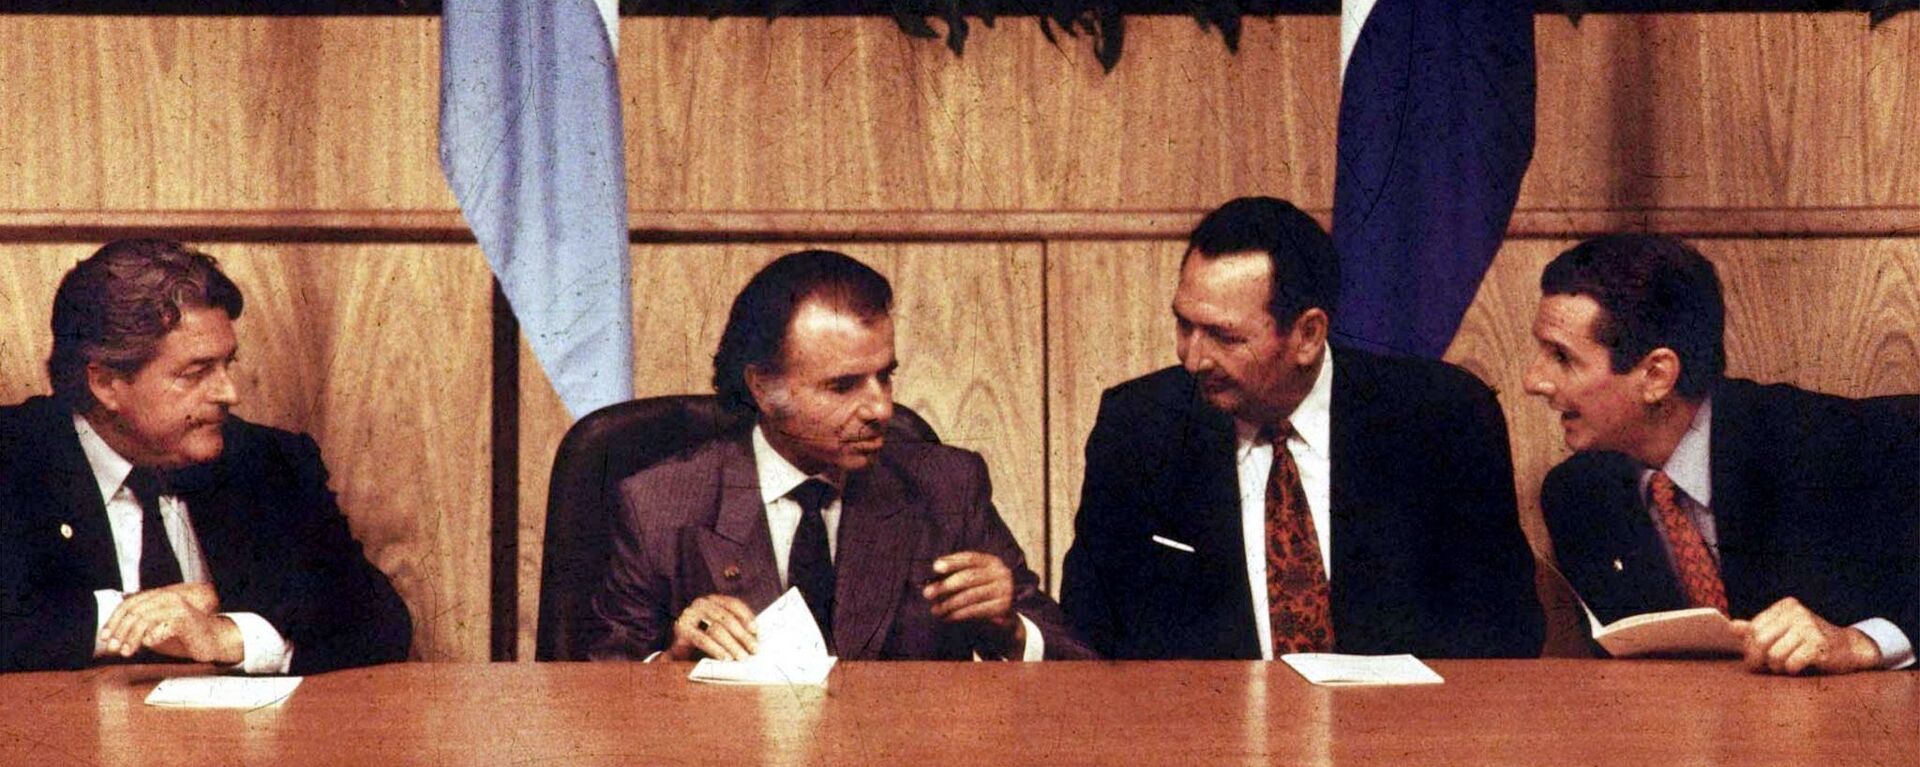 Los presidentes de Uruguay, Luis Alberto Lacalle; de Argentina, Carlos Menem; de Paraguay, Andrés Rodríguez y de Brasil, Fernando Collor de Mello, firmando el Tratado de Asunción en 1991 - Sputnik Mundo, 1920, 18.03.2021